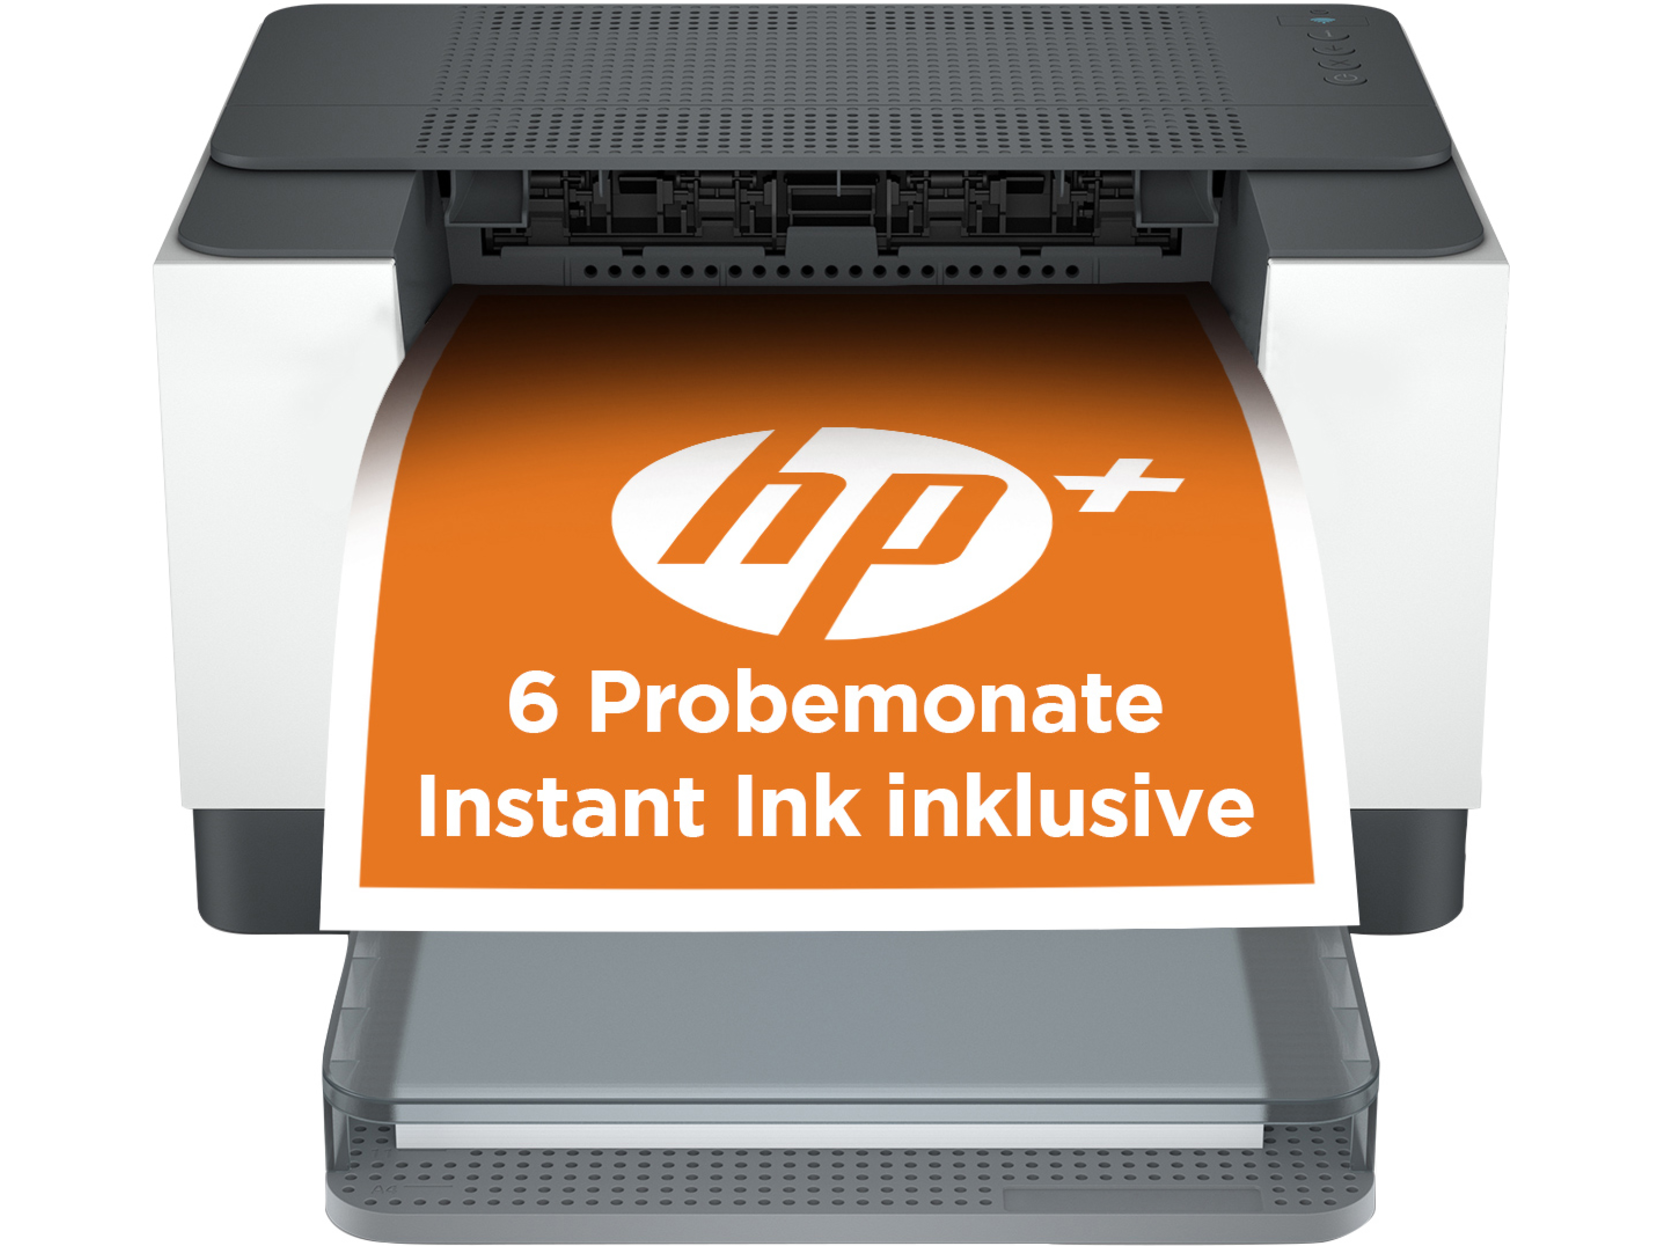 HP LaserJet M209dwe HP+ (A4, 29 ppm, USB, Ethernet, Wi-Fi, duplex) - HP insta ink